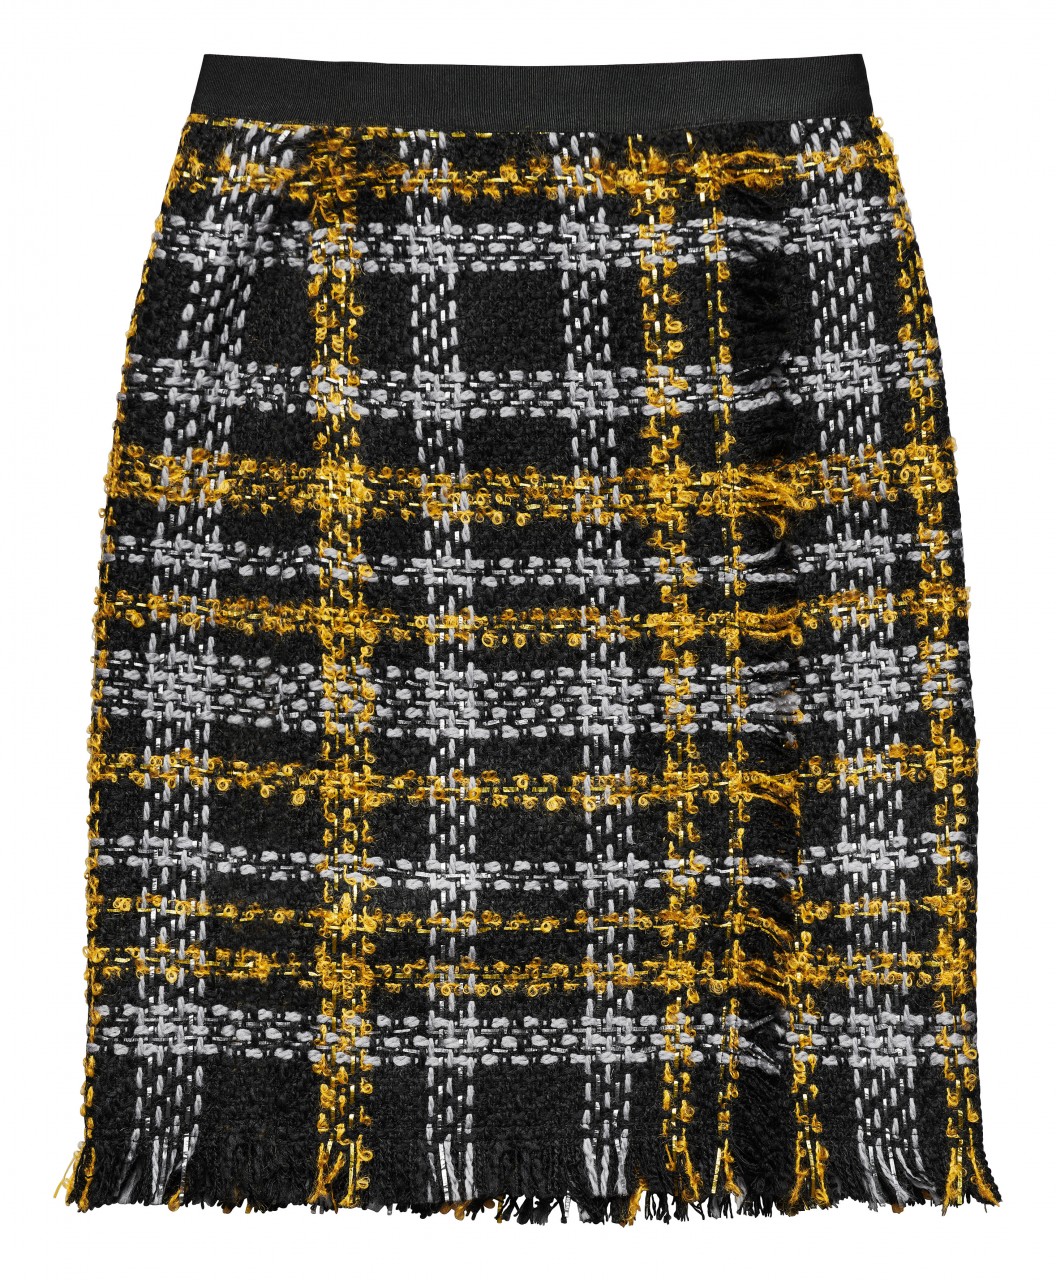 Wool Skirt RM 399.00